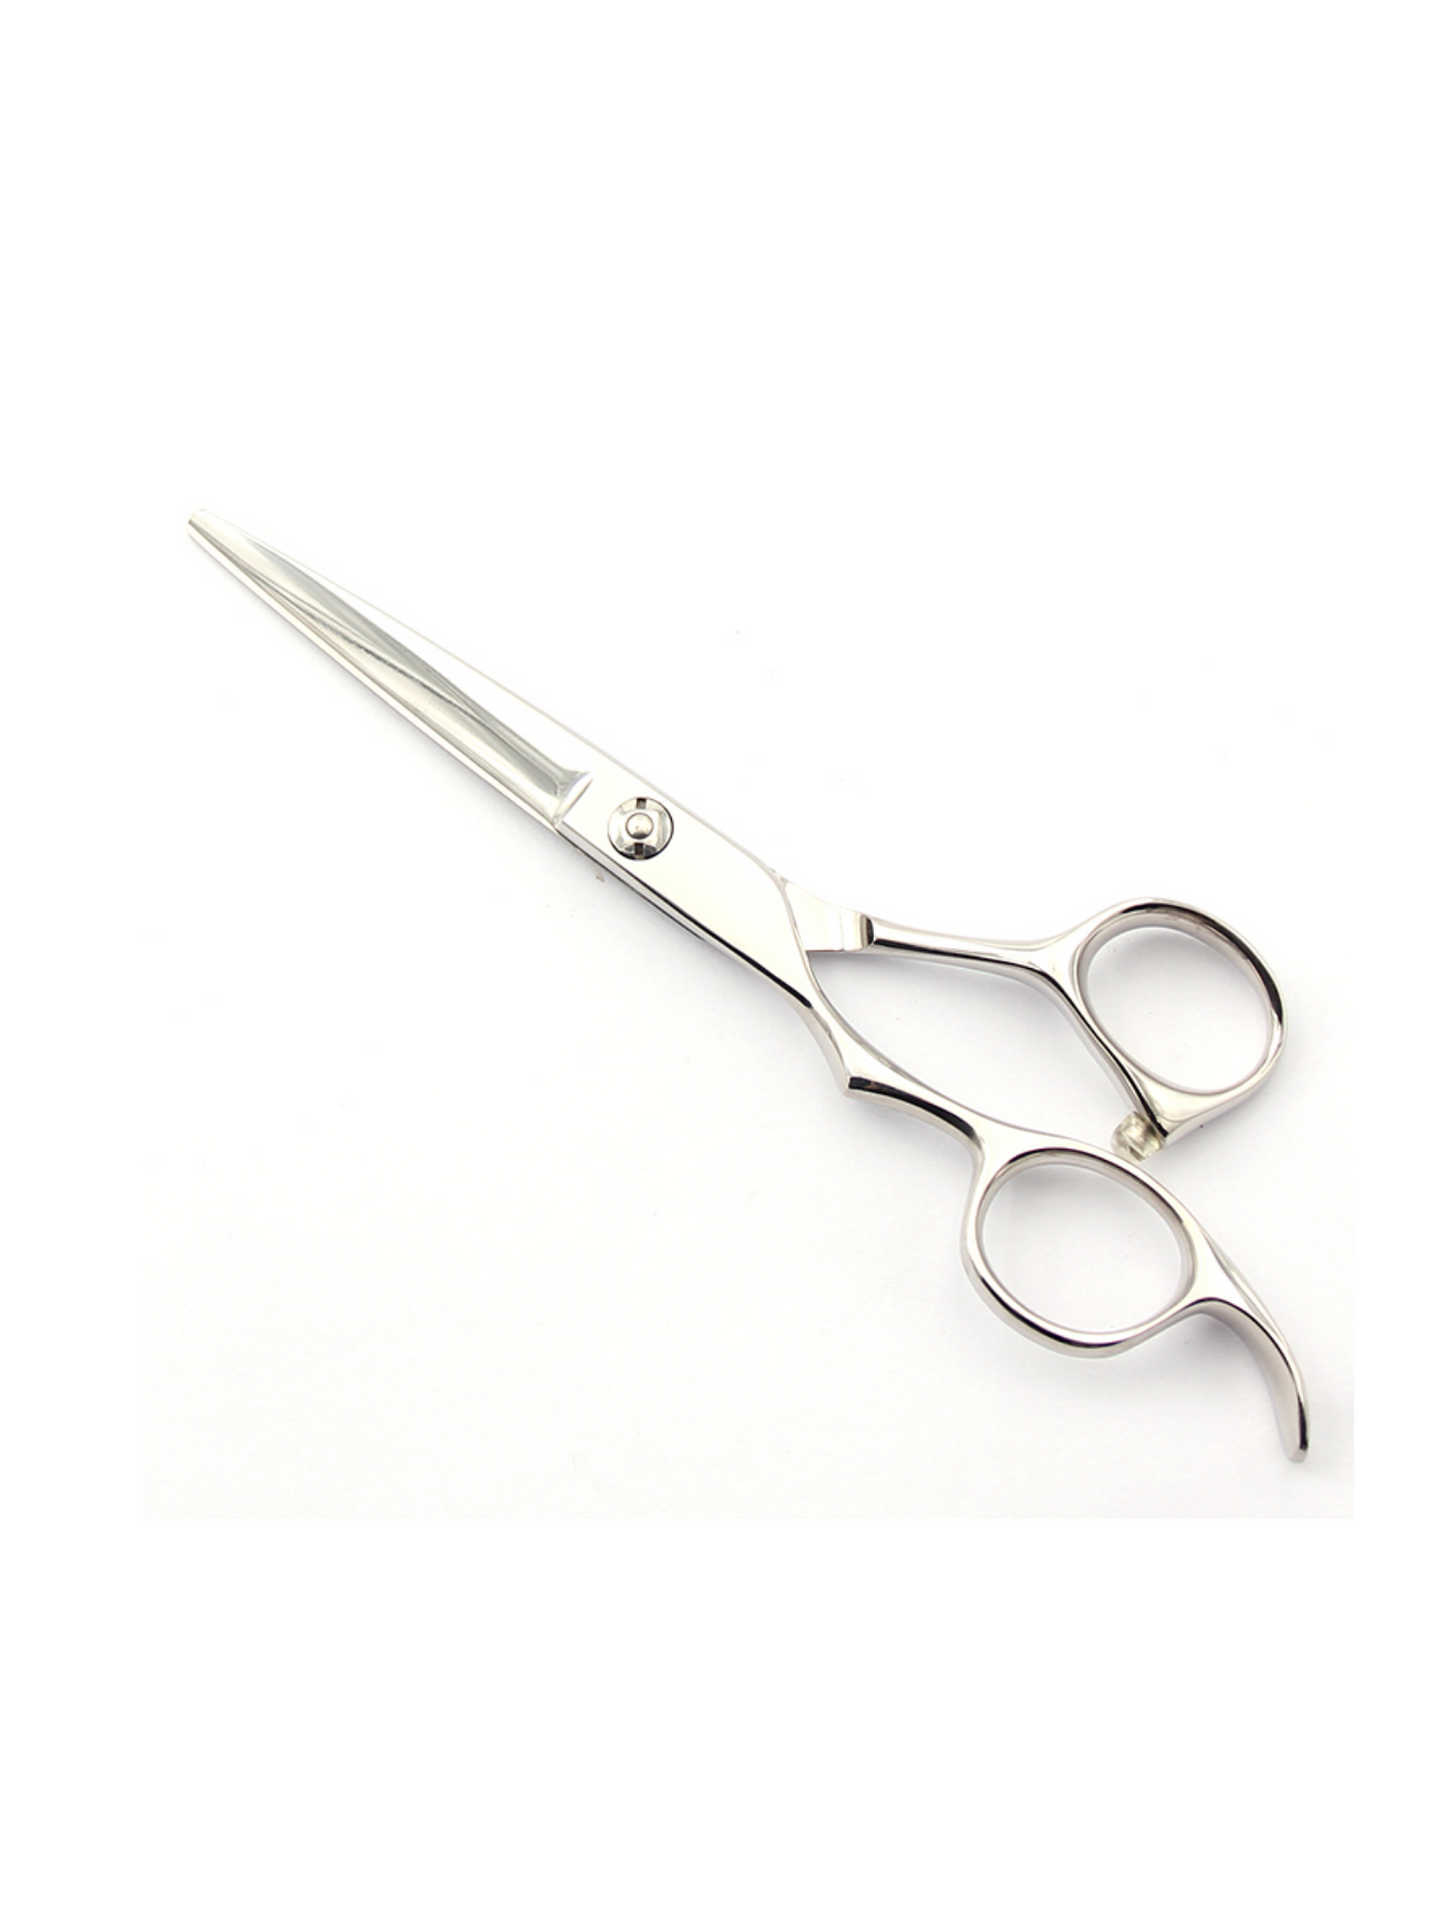 F2F-70 professional straight scissors 7.0"(LH)